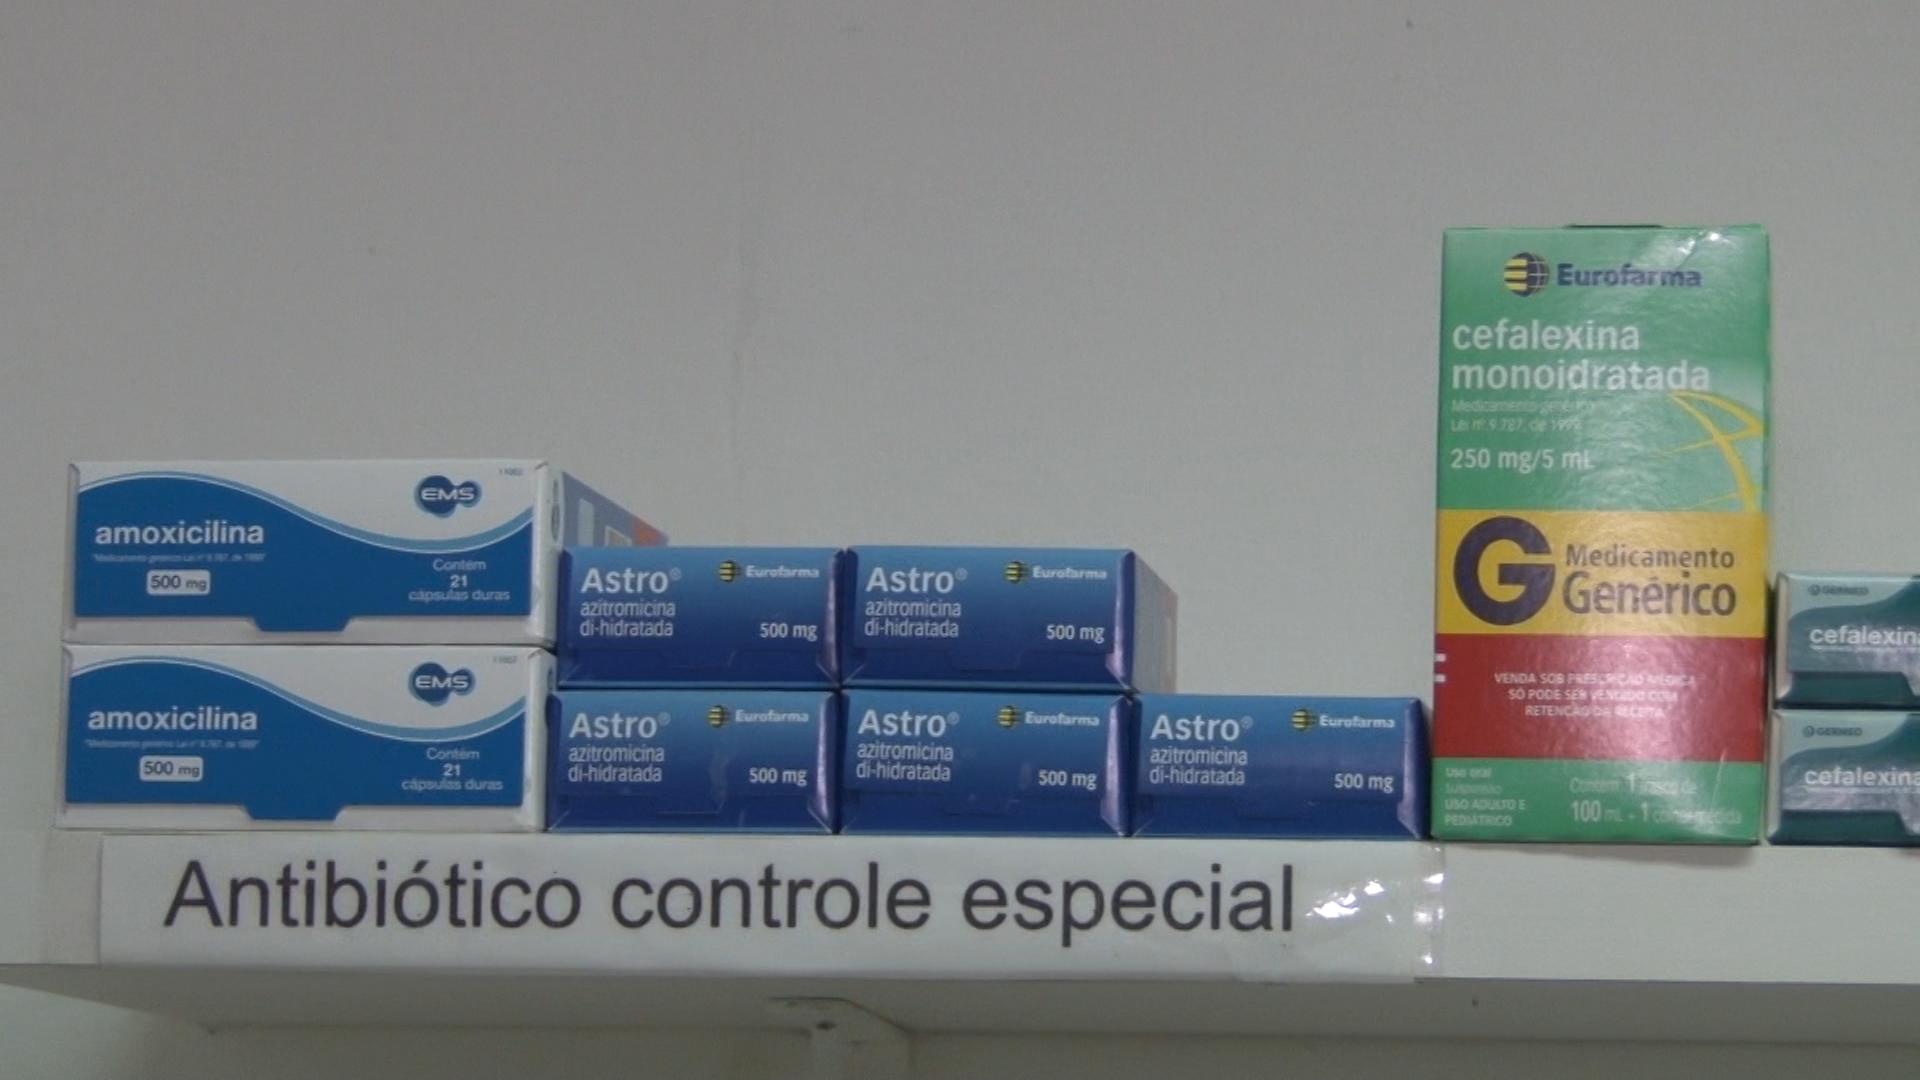 caixas de Antibióticos (amoxilina, astro, cefalexina) que estão em falta em hospitais e farmácias – Foto: Gladionor Ramos/NDTV